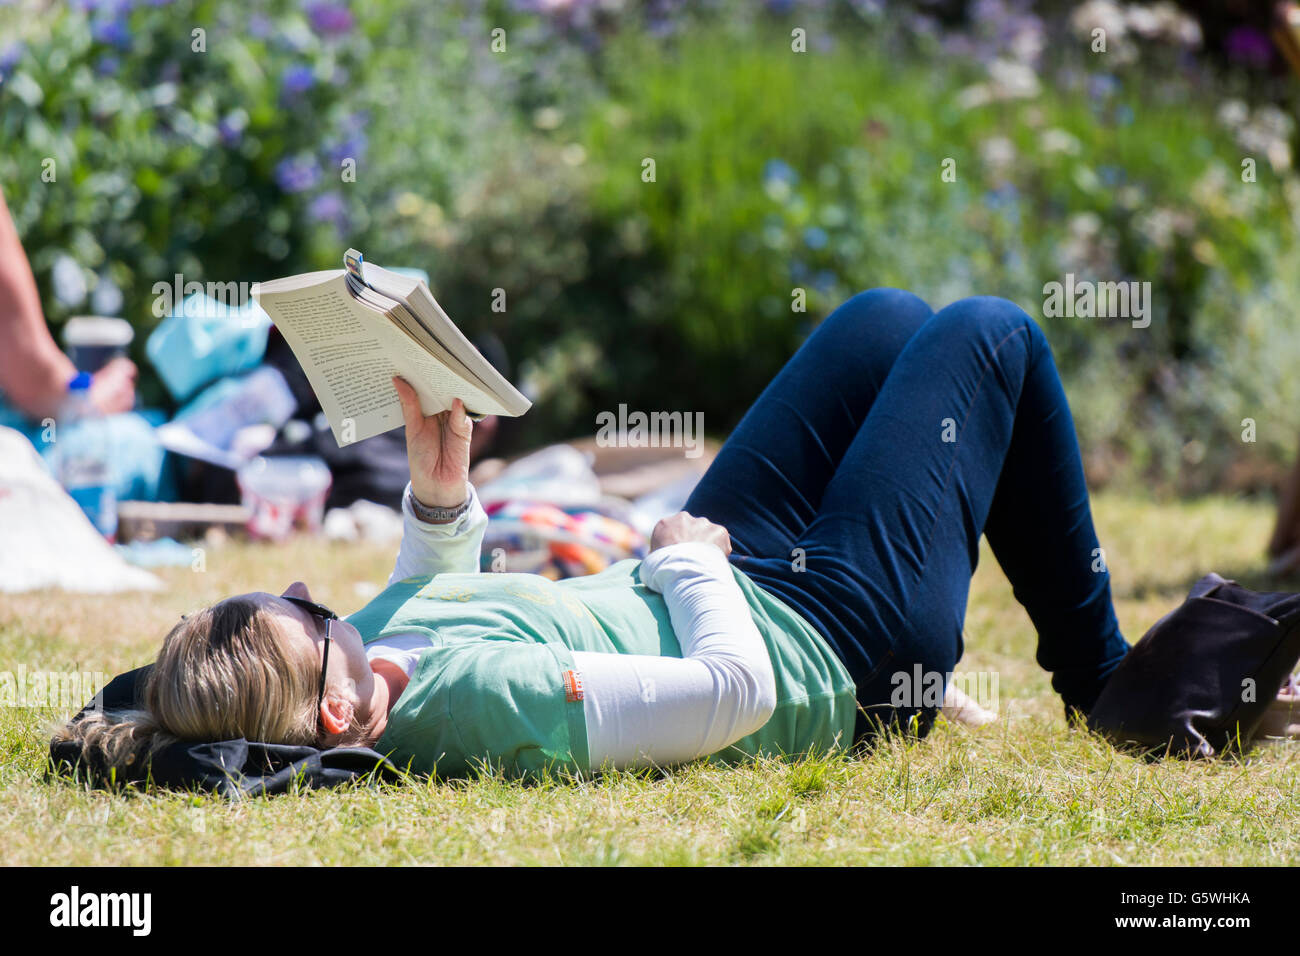 Le persone la lettura di libri nel caldo sole estivo presso la Hay Festival della letteratura e delle arti, Hay on Wye, Powys, Wales UK, Giugno 03 2016 Foto Stock